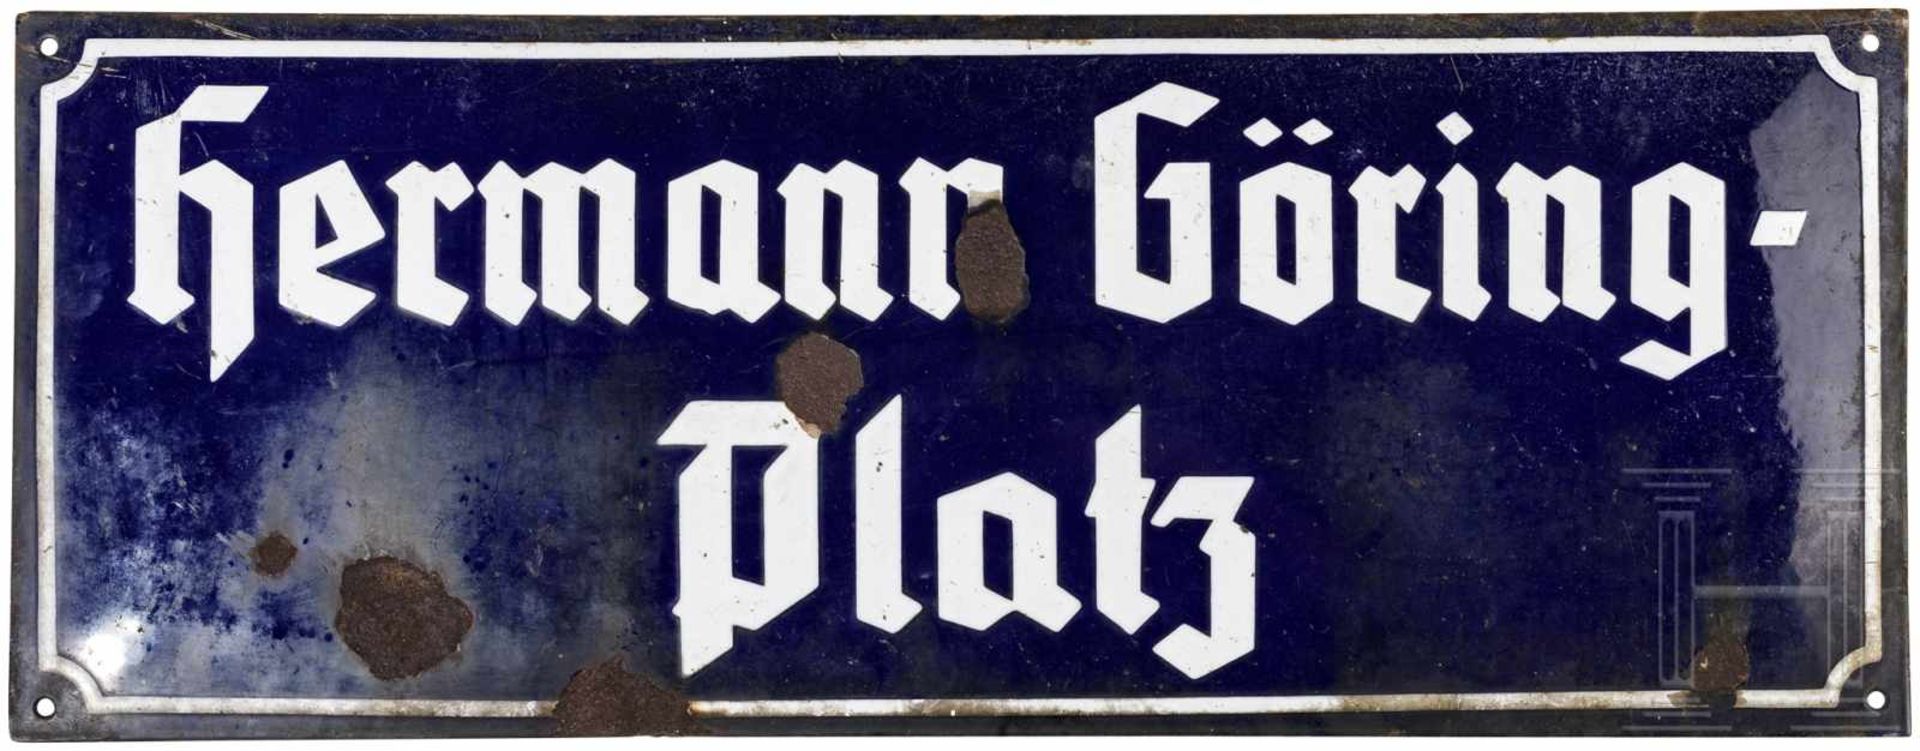 Emailletafel "Hermann Göring Platz"Leicht konvexe, blau emaillierte Eisentafel mit entsprechender